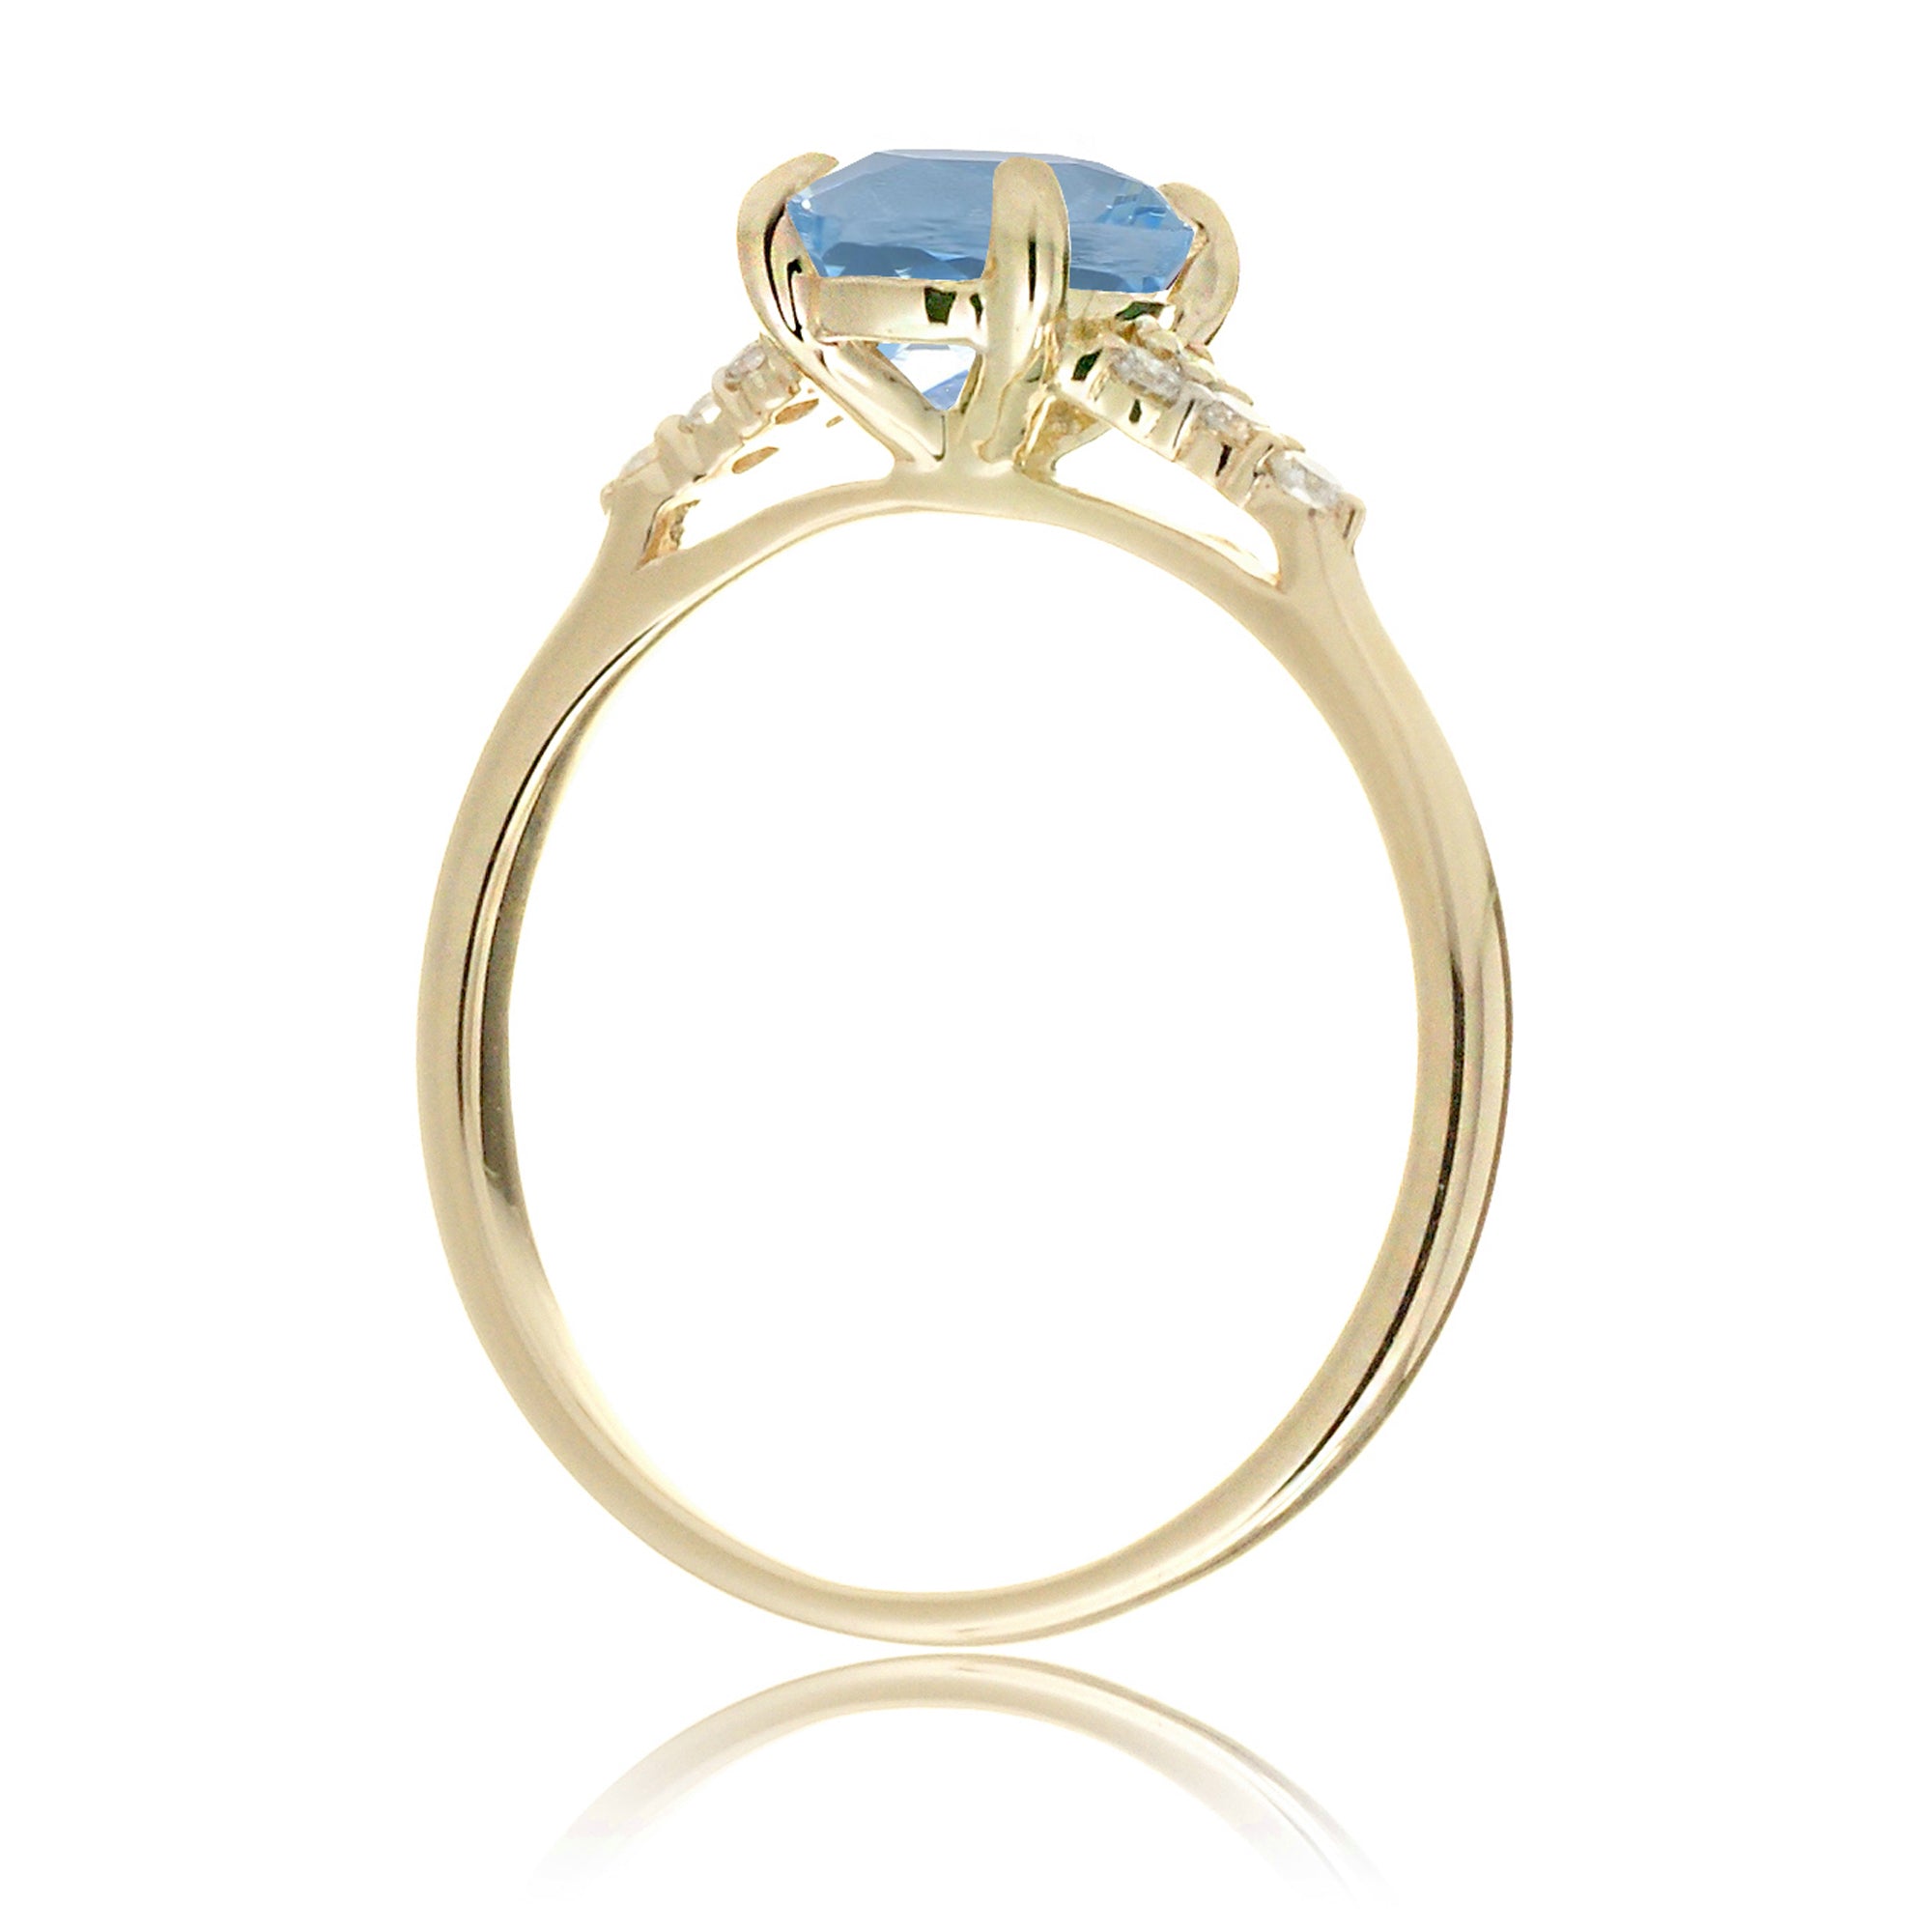 Round aquamarine three stone ring in yellow gold